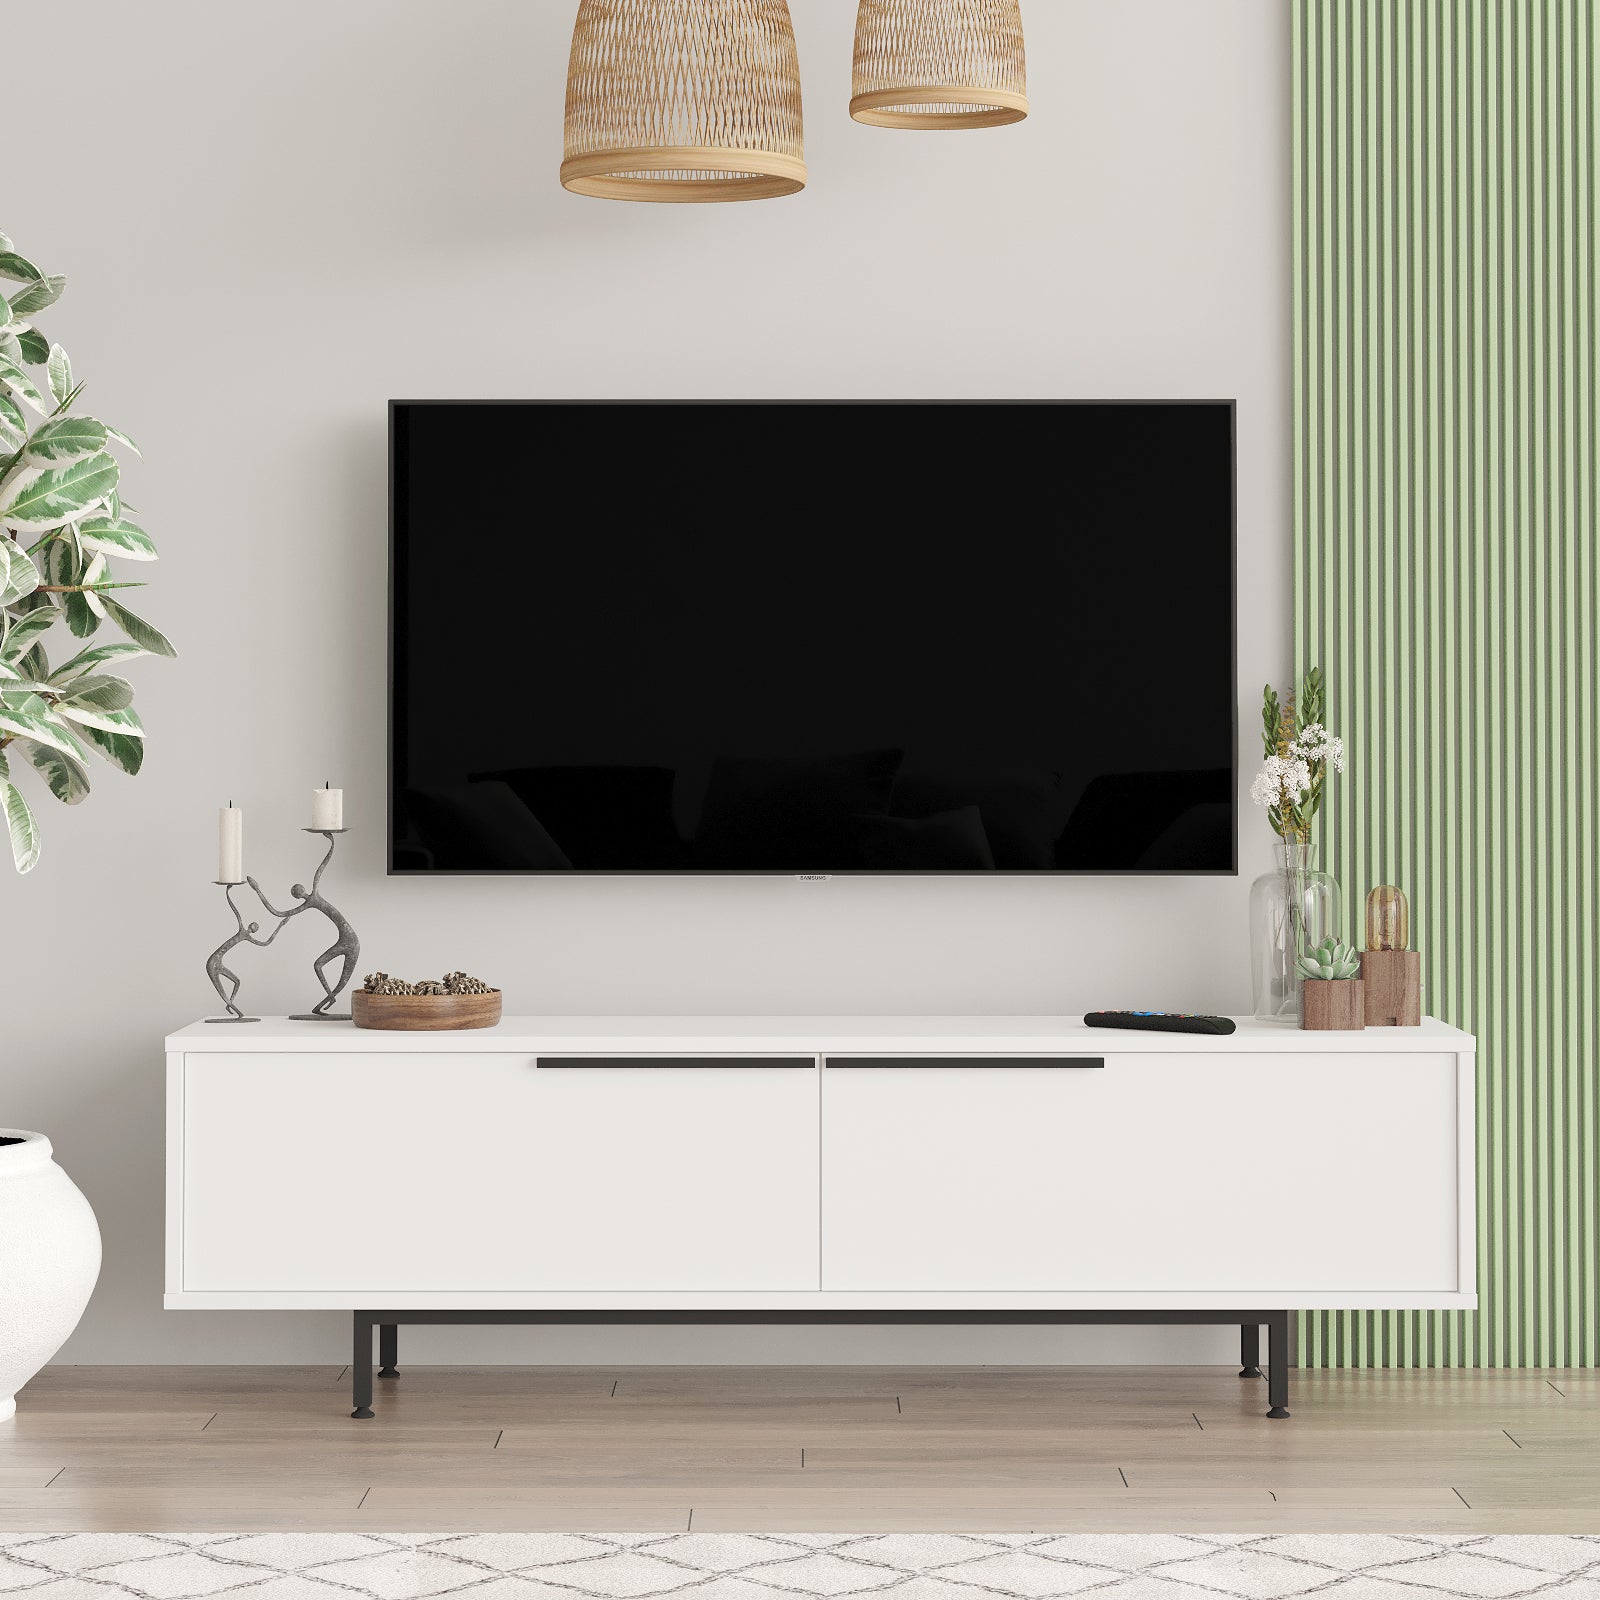 Blanc- Élégant meuble TV 'AURORA' présenté dans un intérieur lumineux.